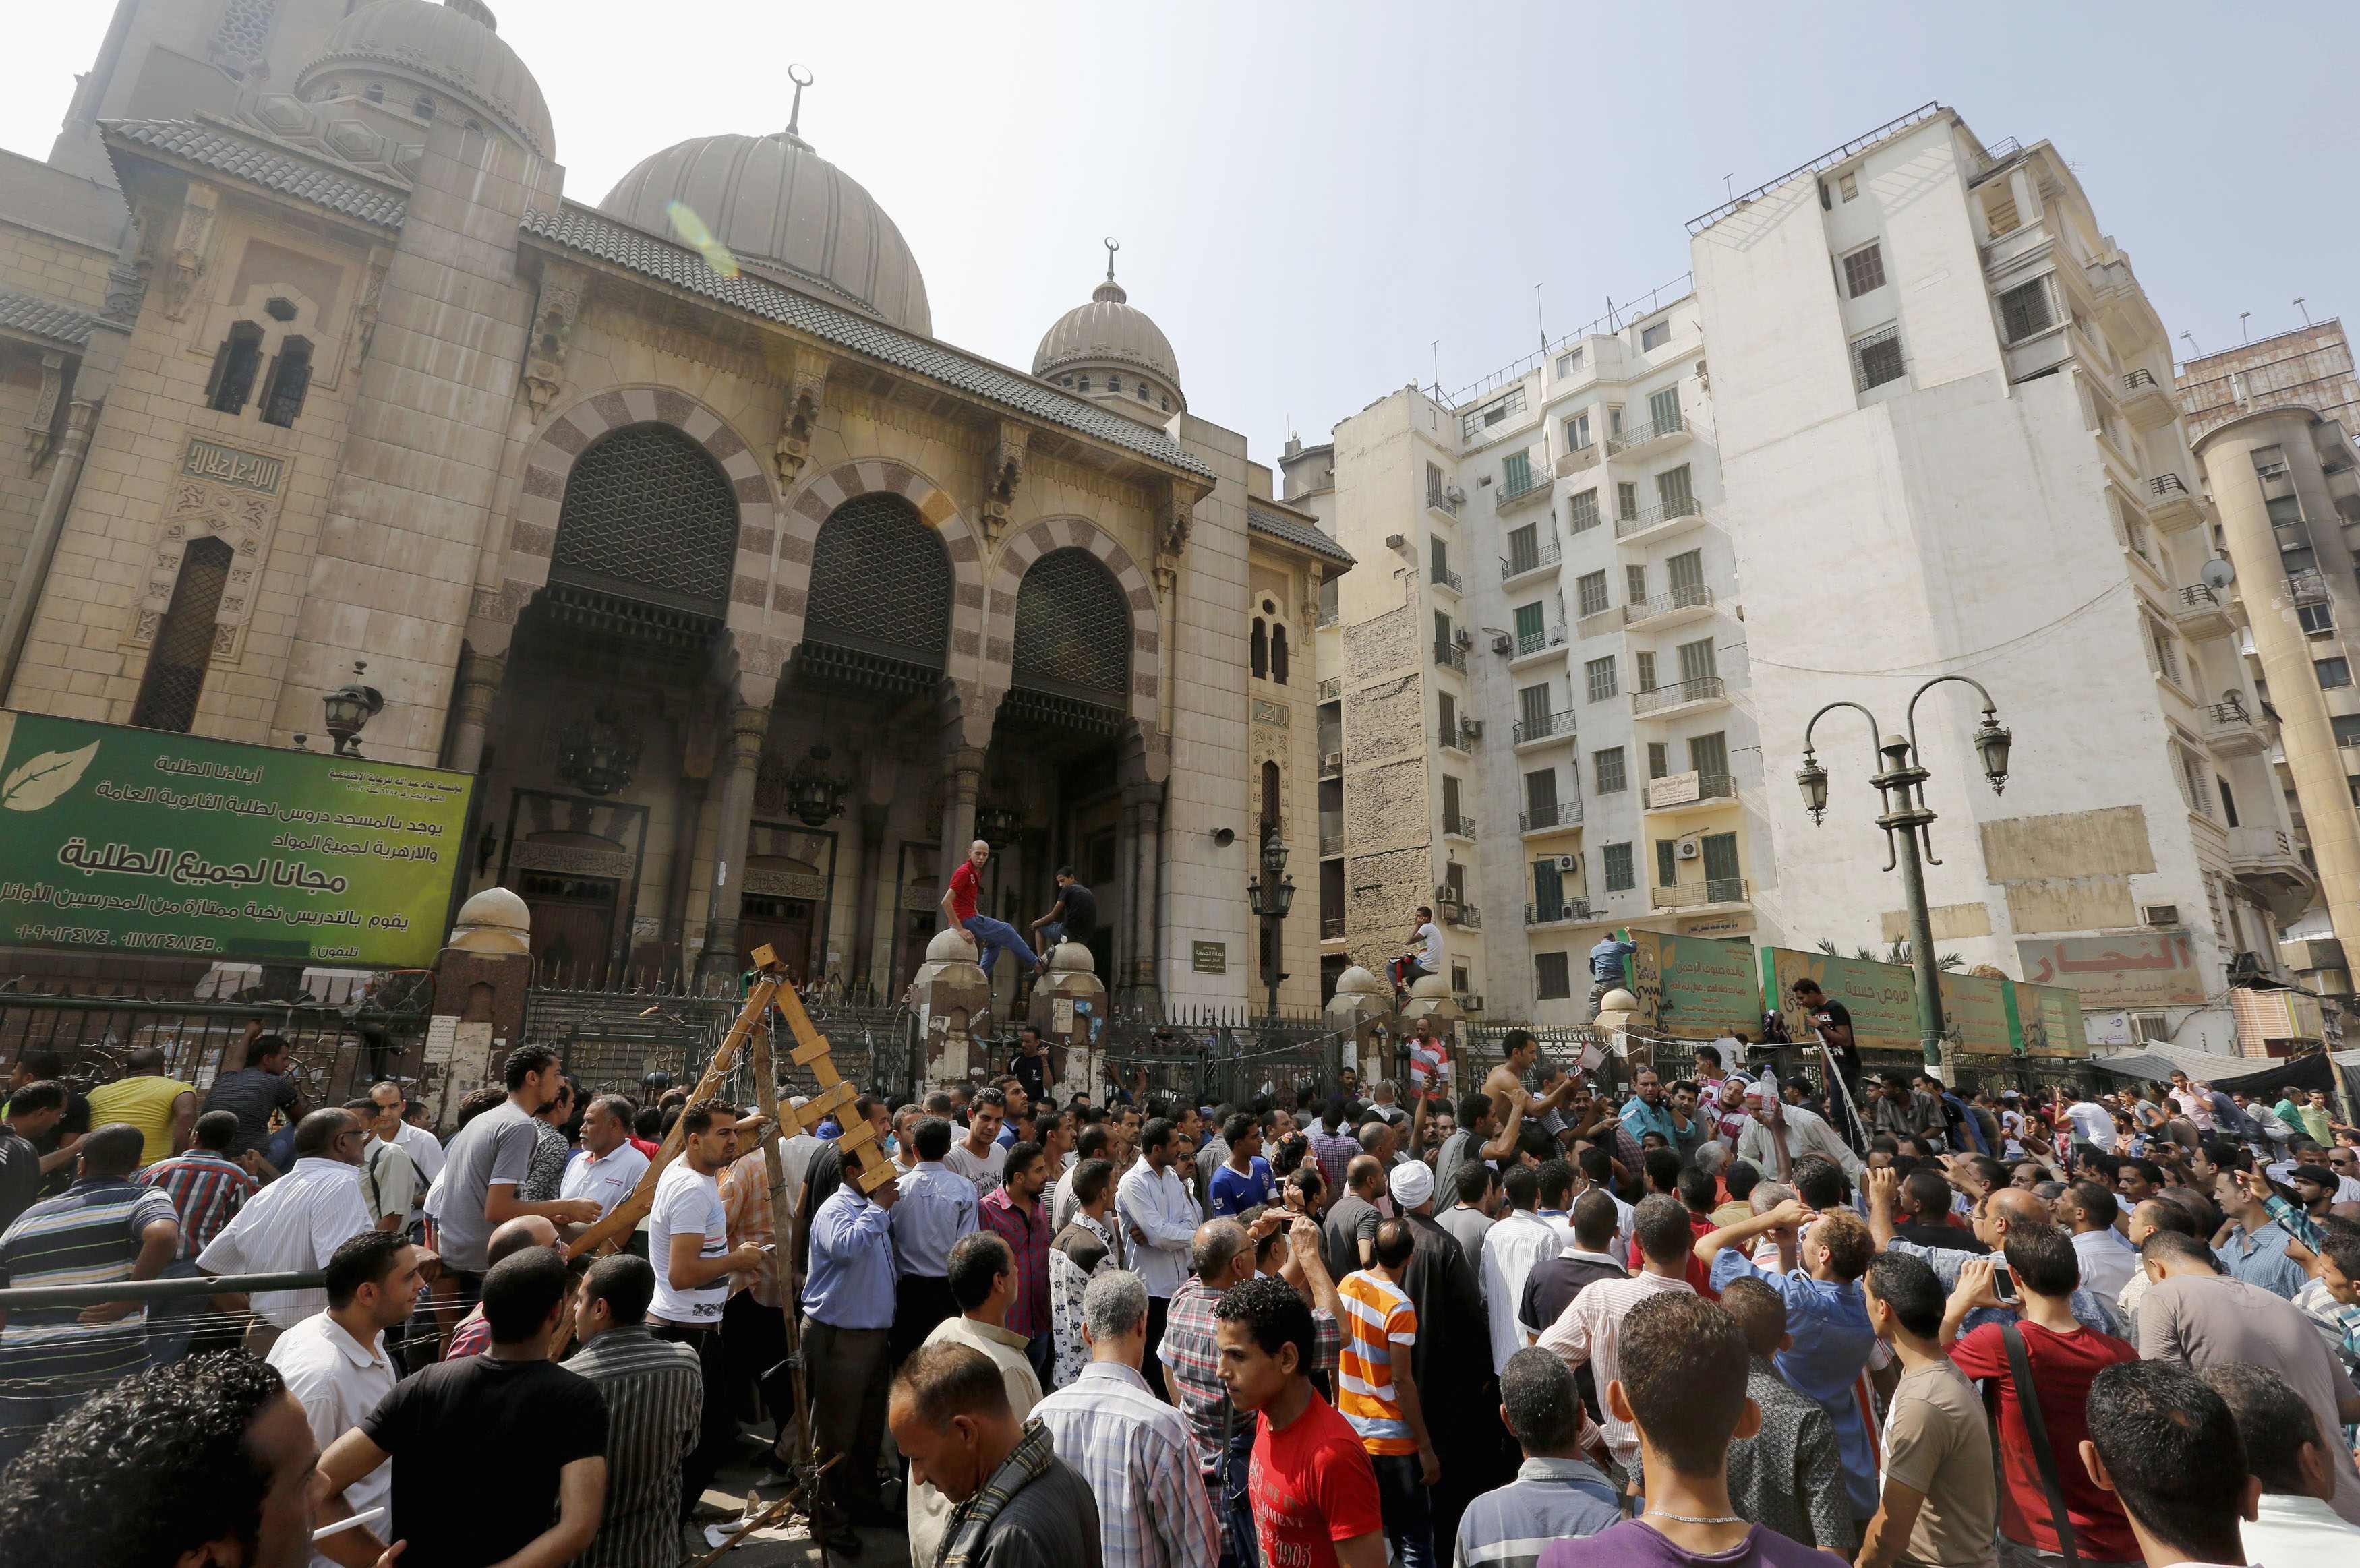 Η εικόνα έξω από το πολιορκούμενο τζαμί ΦΩΤΟ REUTERS